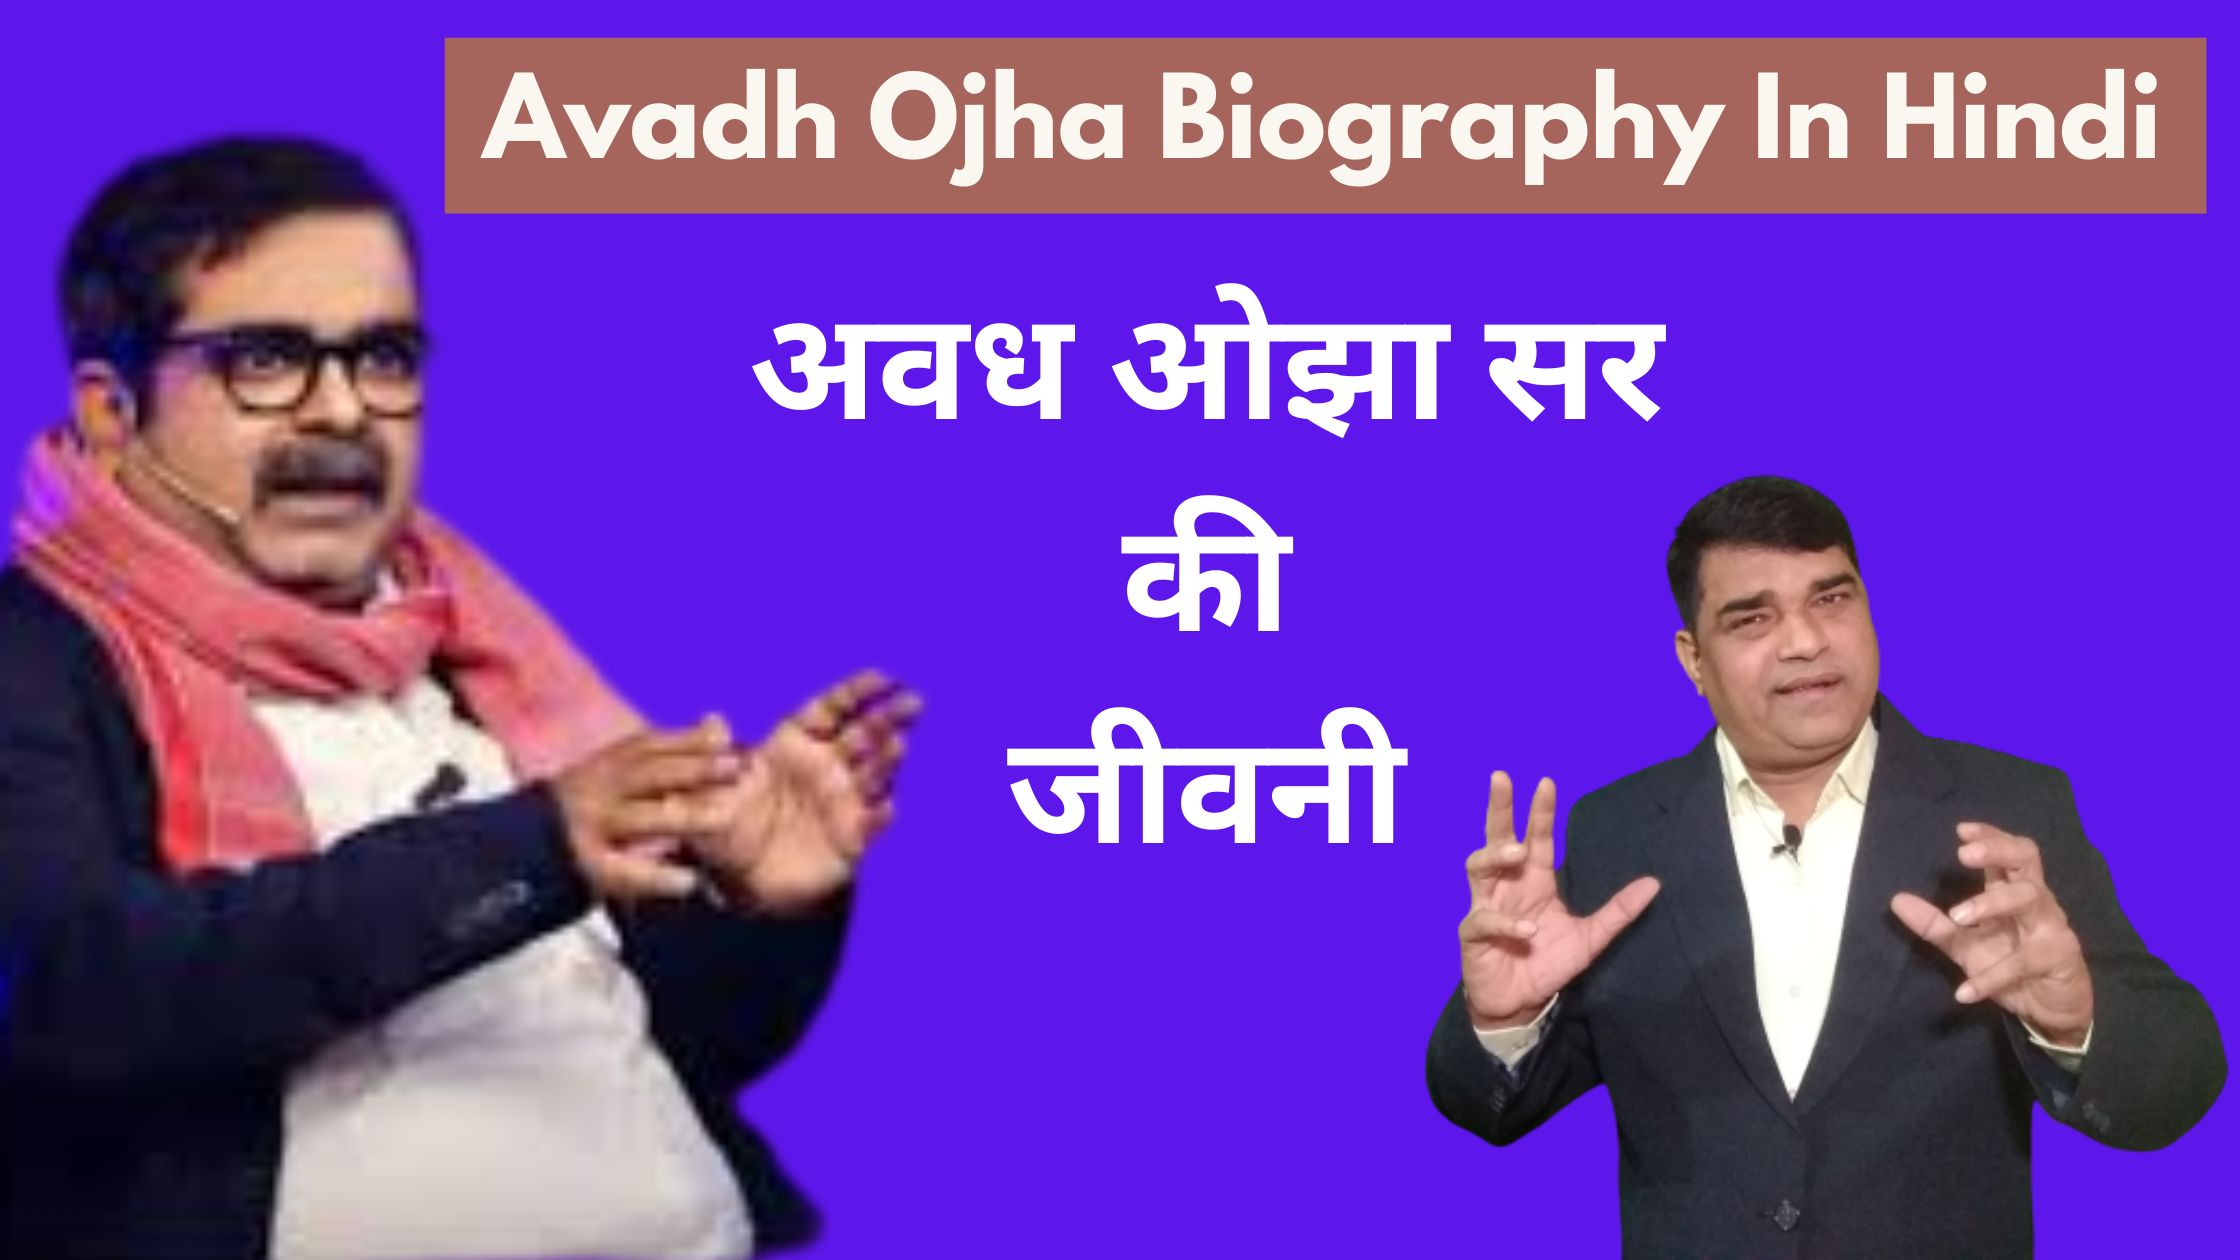 अवध ओझा सर की जीवनी || Avadh Ojha Biography In Hindi